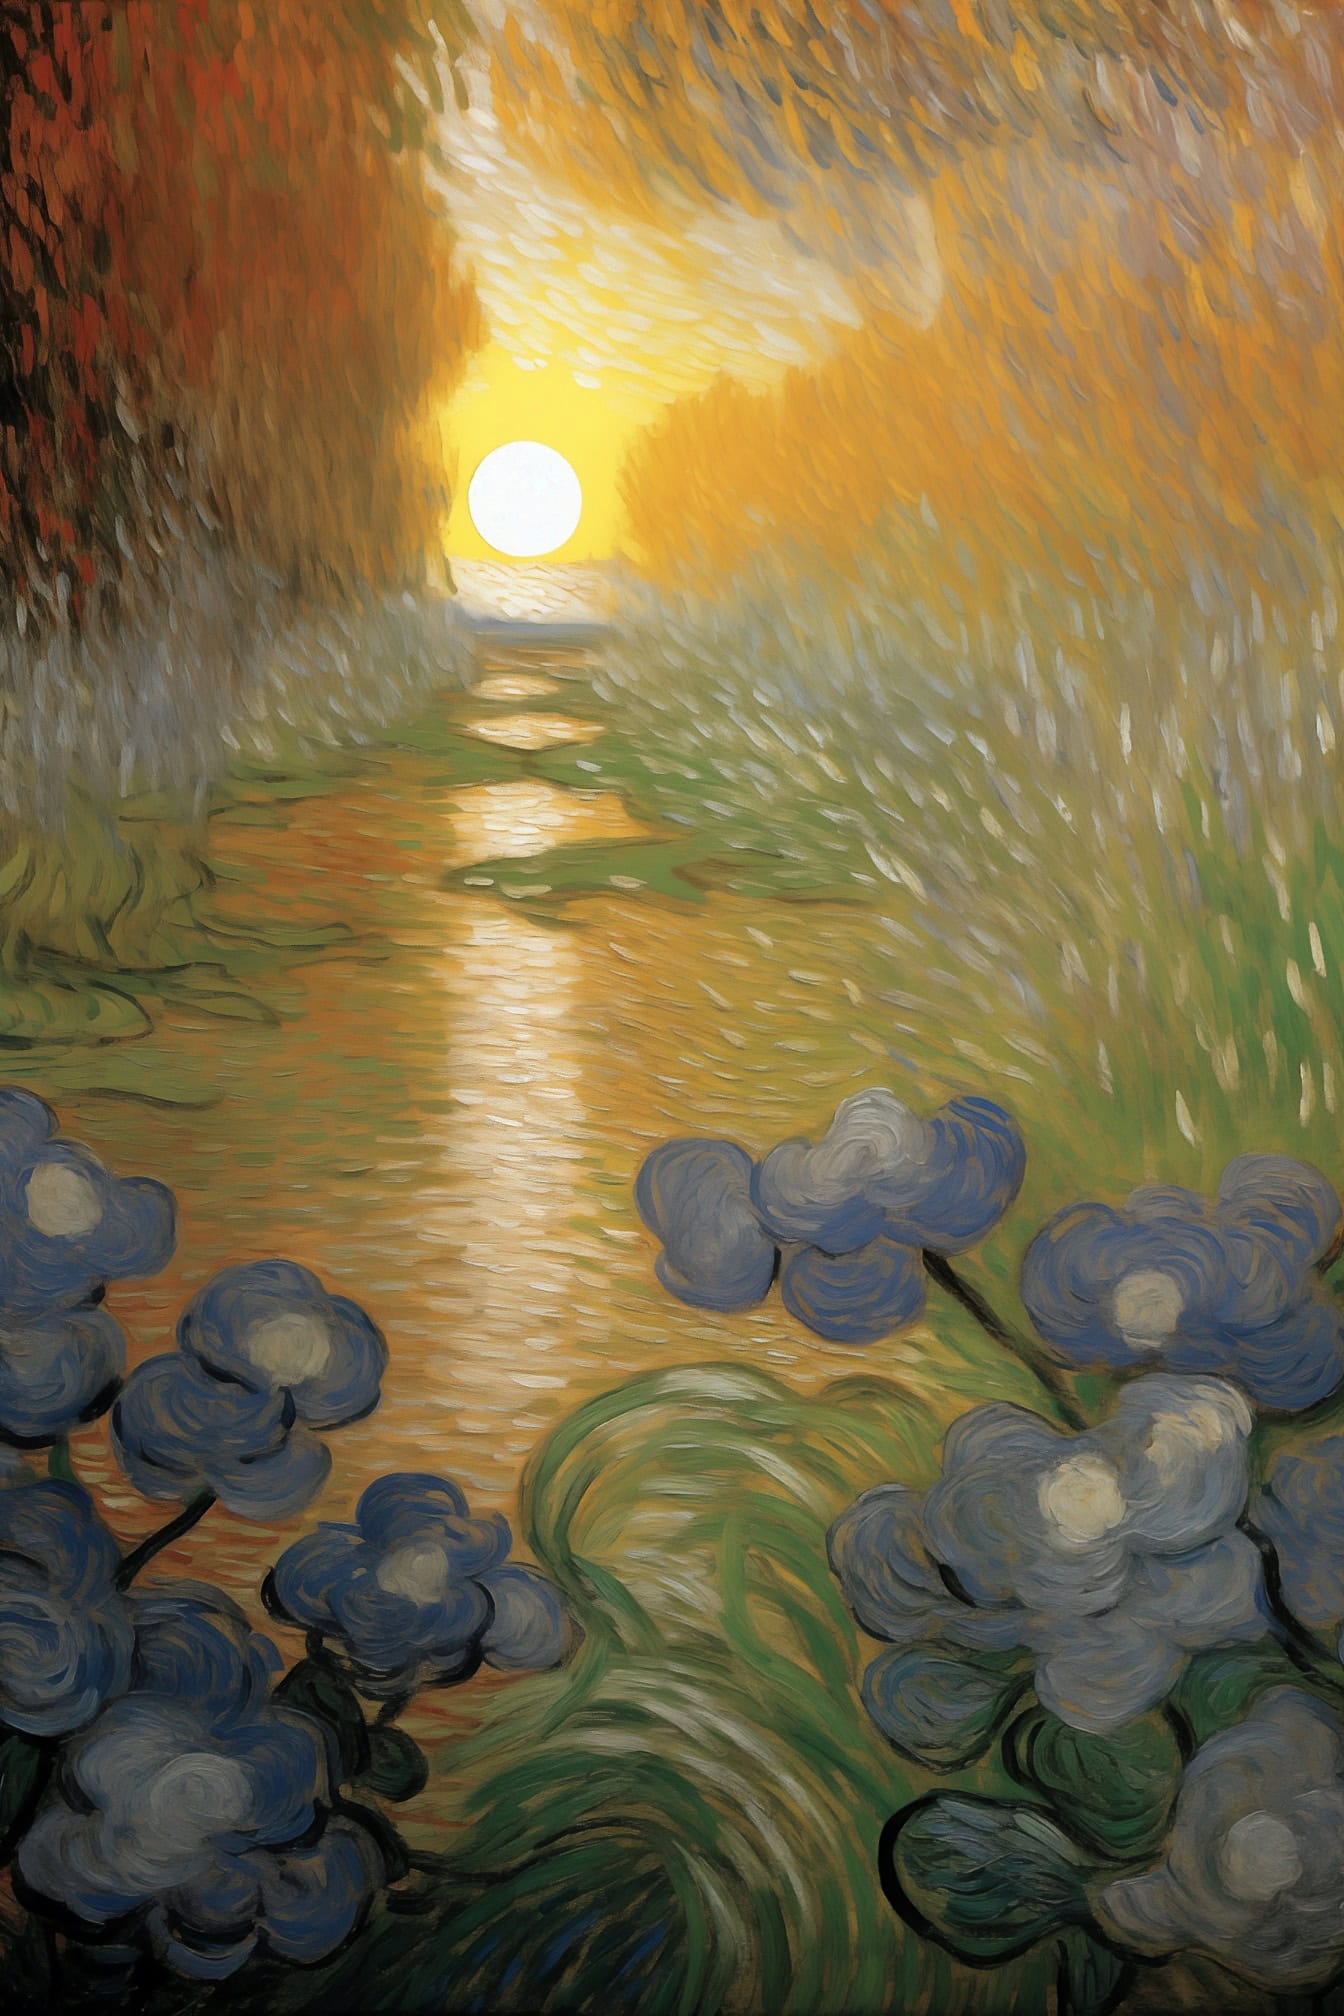 유명한 예술가 반 고흐 (Van Gogh)의 스타일로 일몰의 꽃과 물의 유화